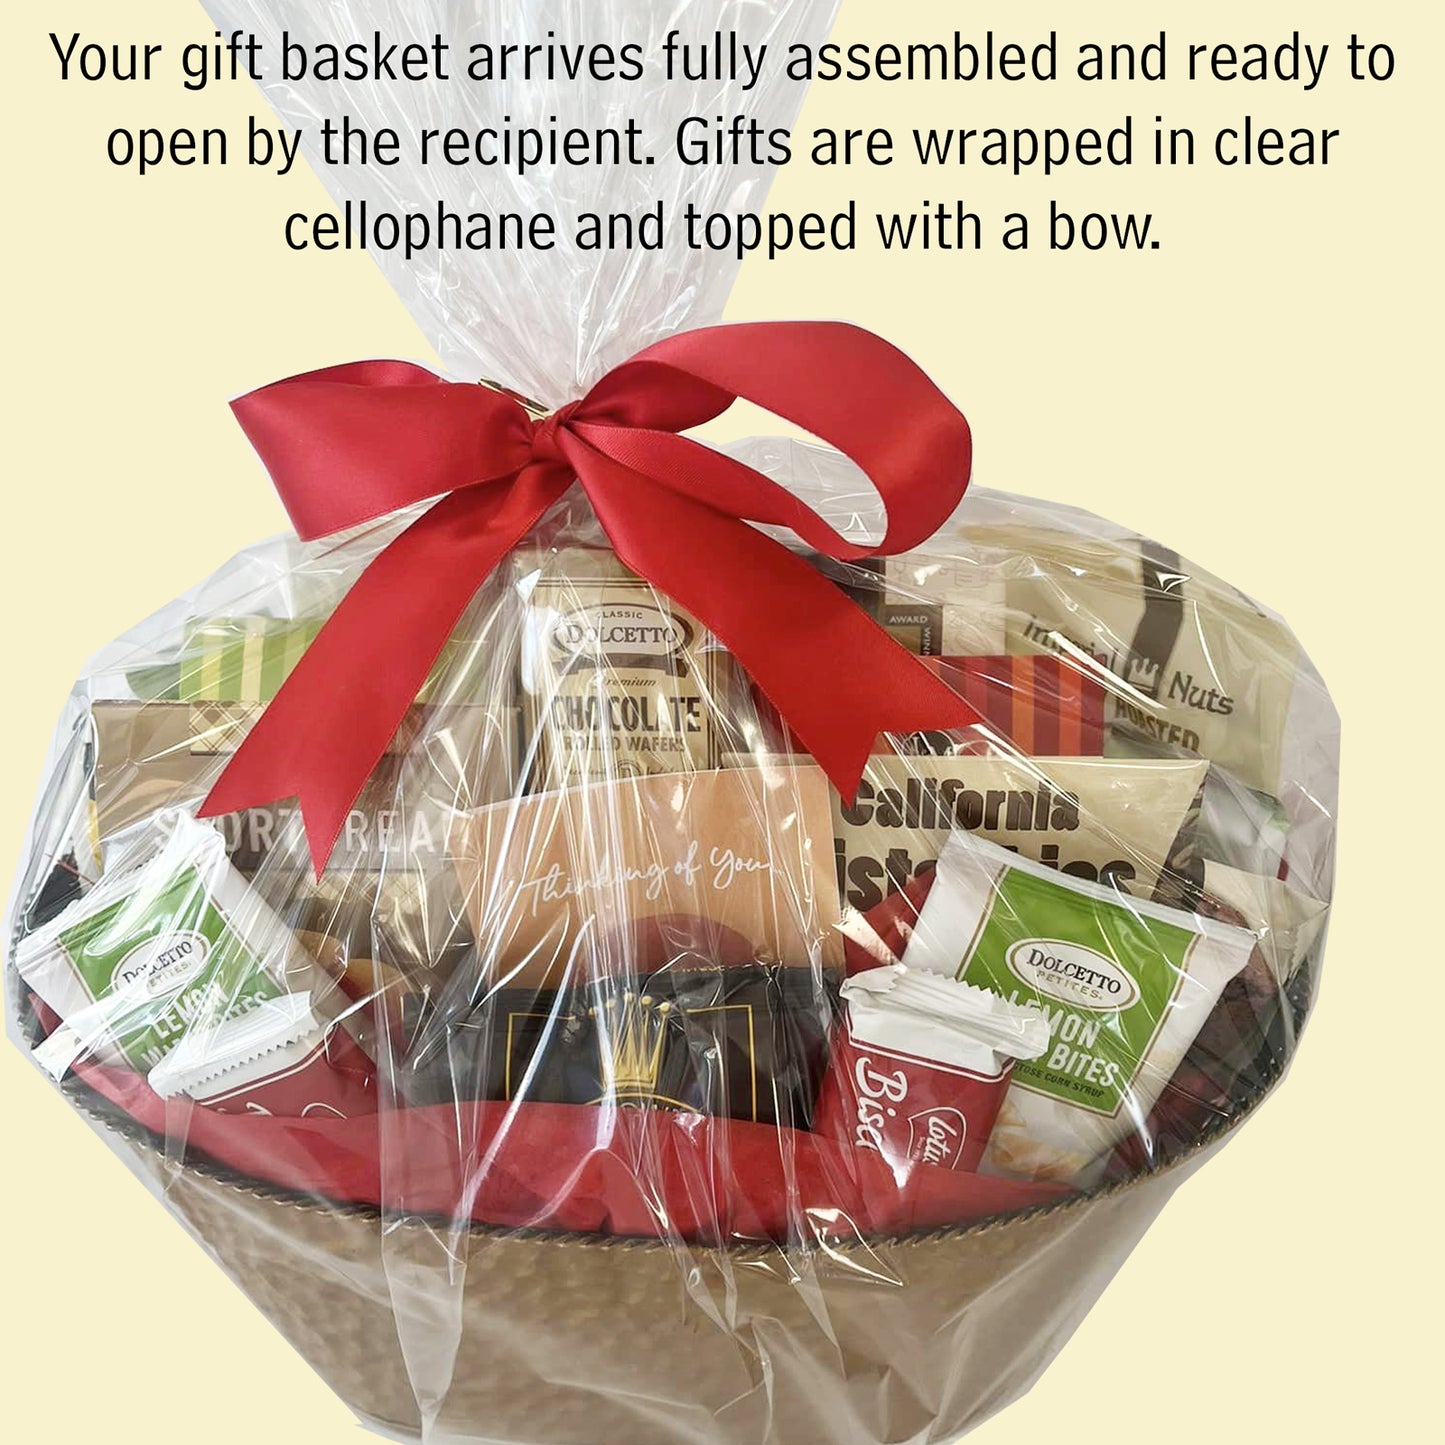 Grand Gourmet Birthday Gift Basket for Men, Women, Friends, Family, Business